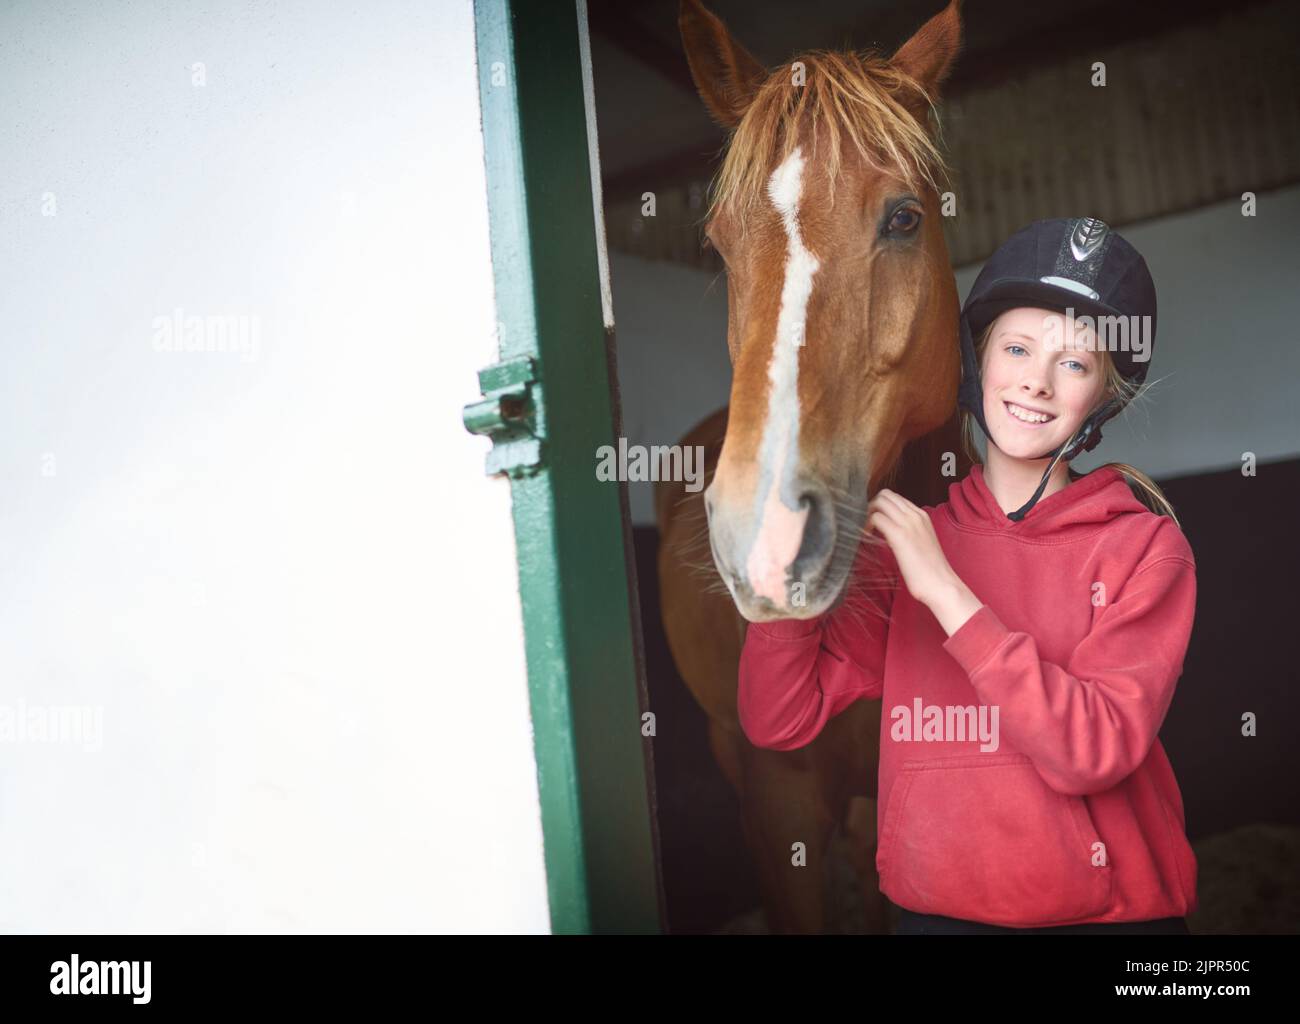 Mein Pferd, mein Leben. Ein Mädchen im Teenageralter, das sich mit ihrem Pferd verklebt. Stockfoto